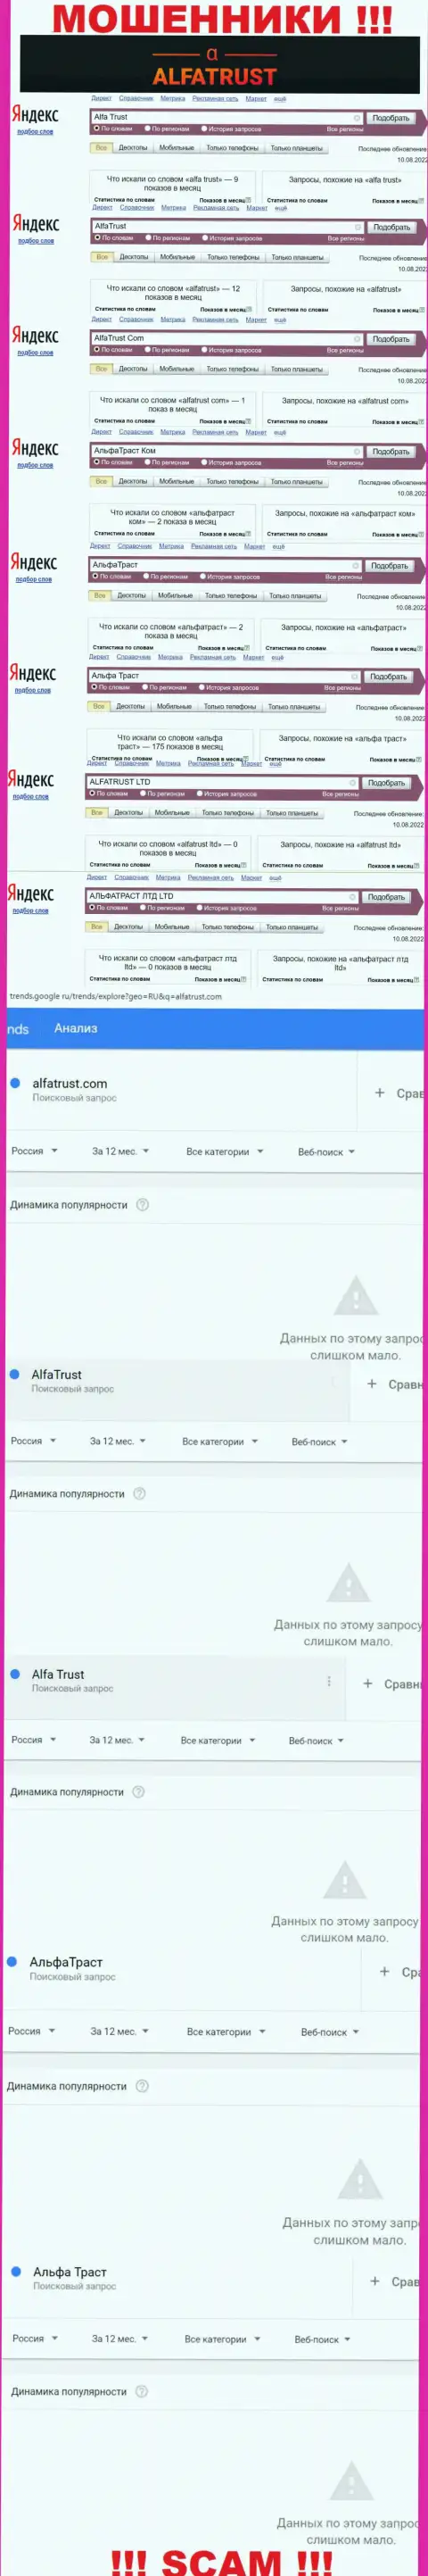 Итог online-запросов информации про мошенников AlfaTrust Com в глобальной сети интернет